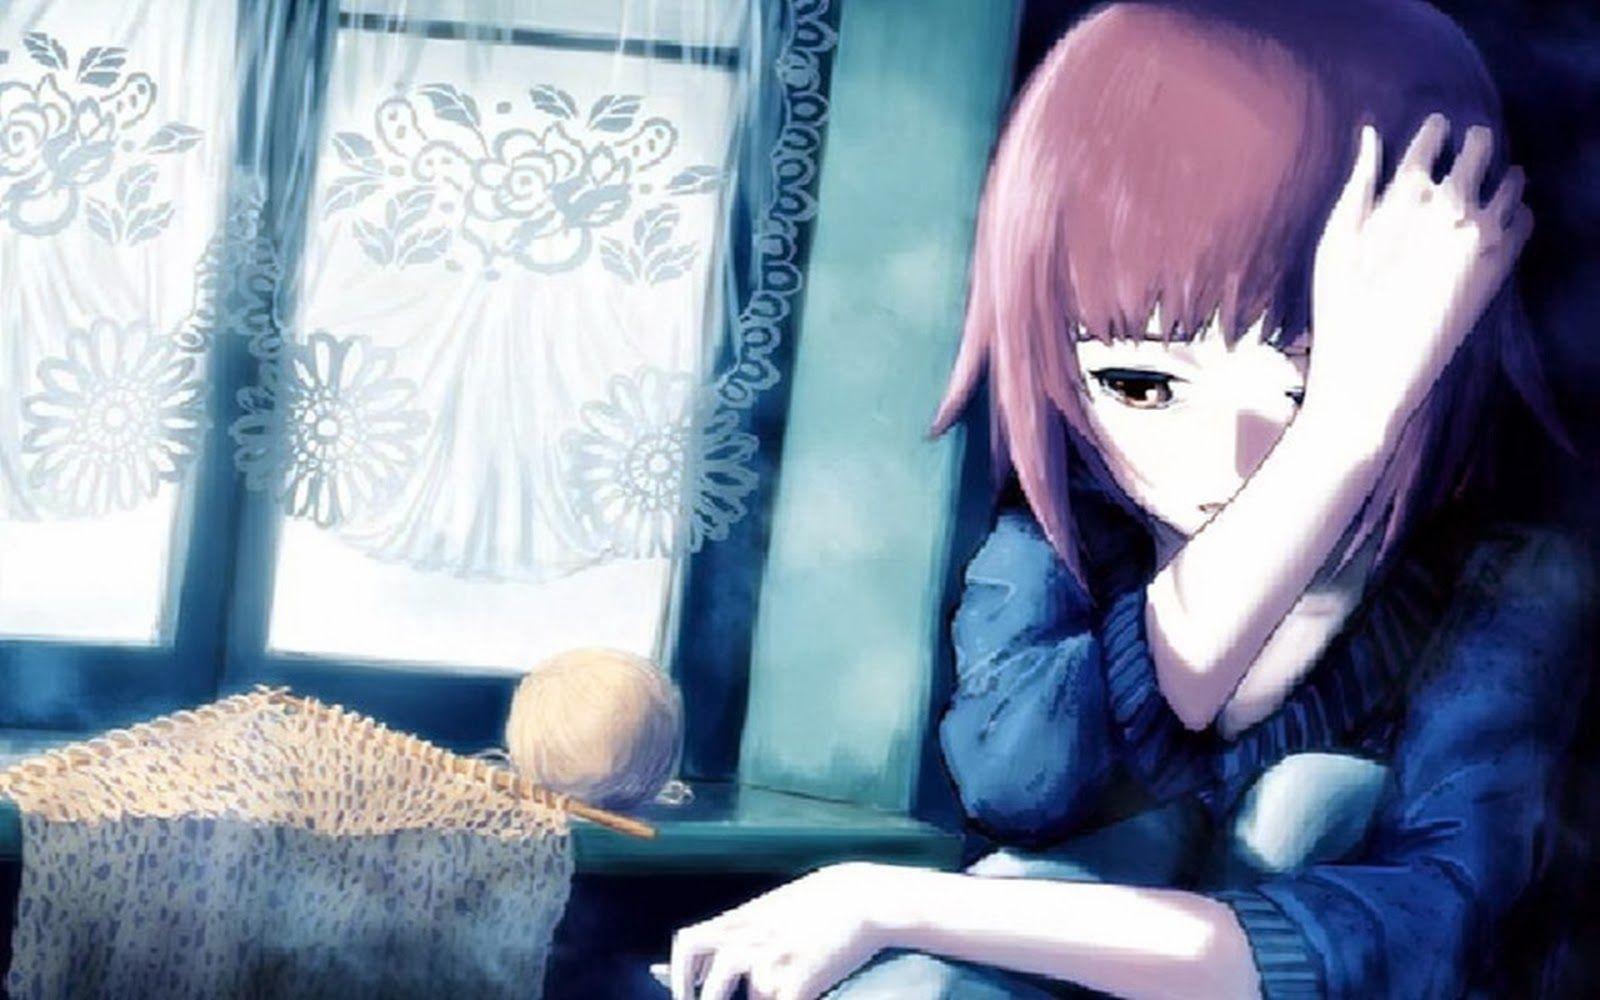 Sad Anime Girl Crying in Rain Alone